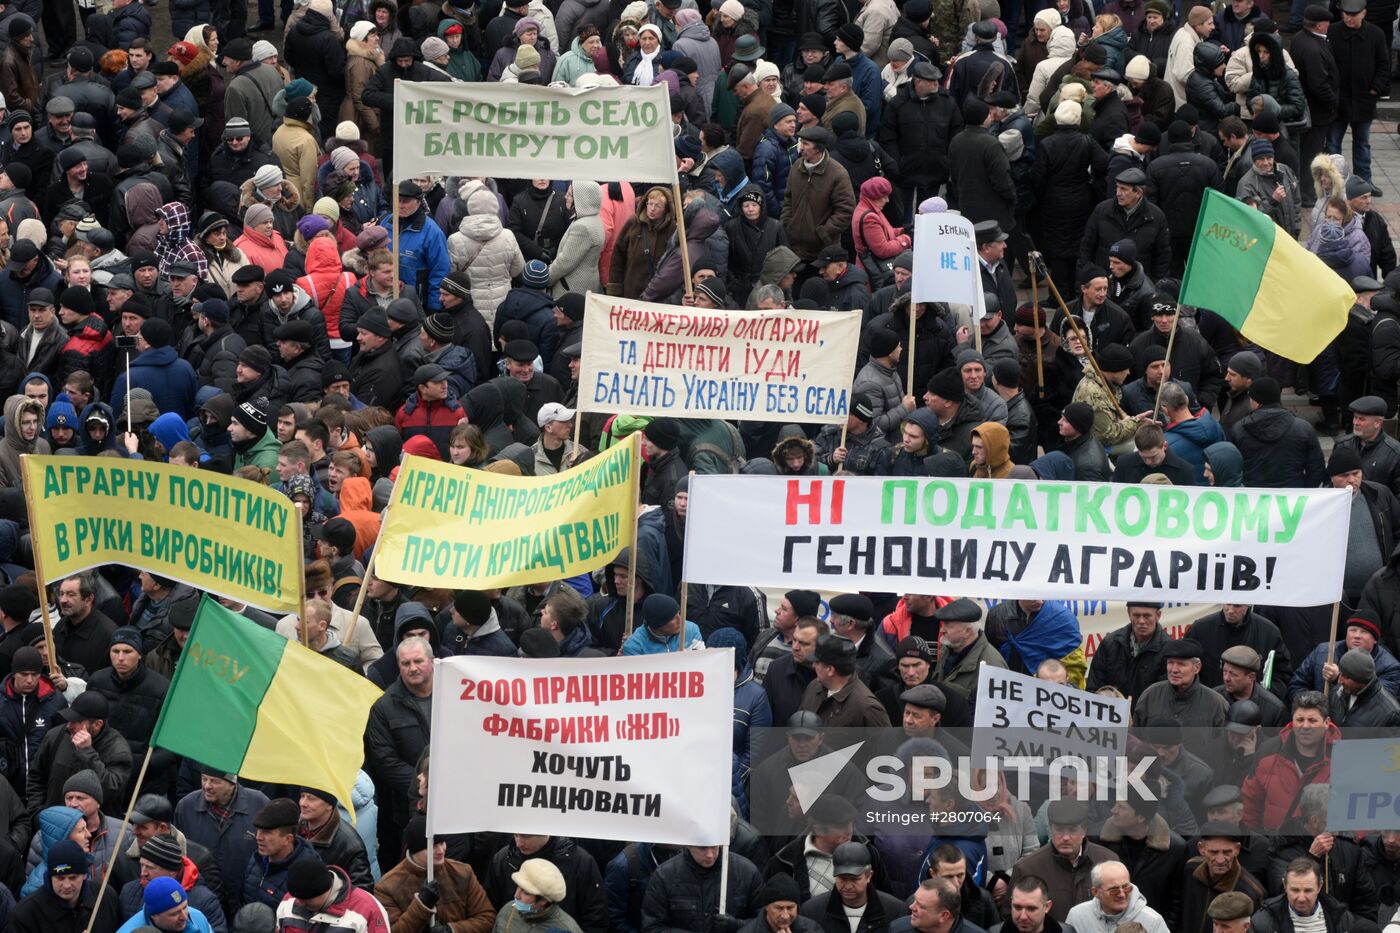 Ukrainian farmers stage protest in front of Verkhovna Rada building in Kiev